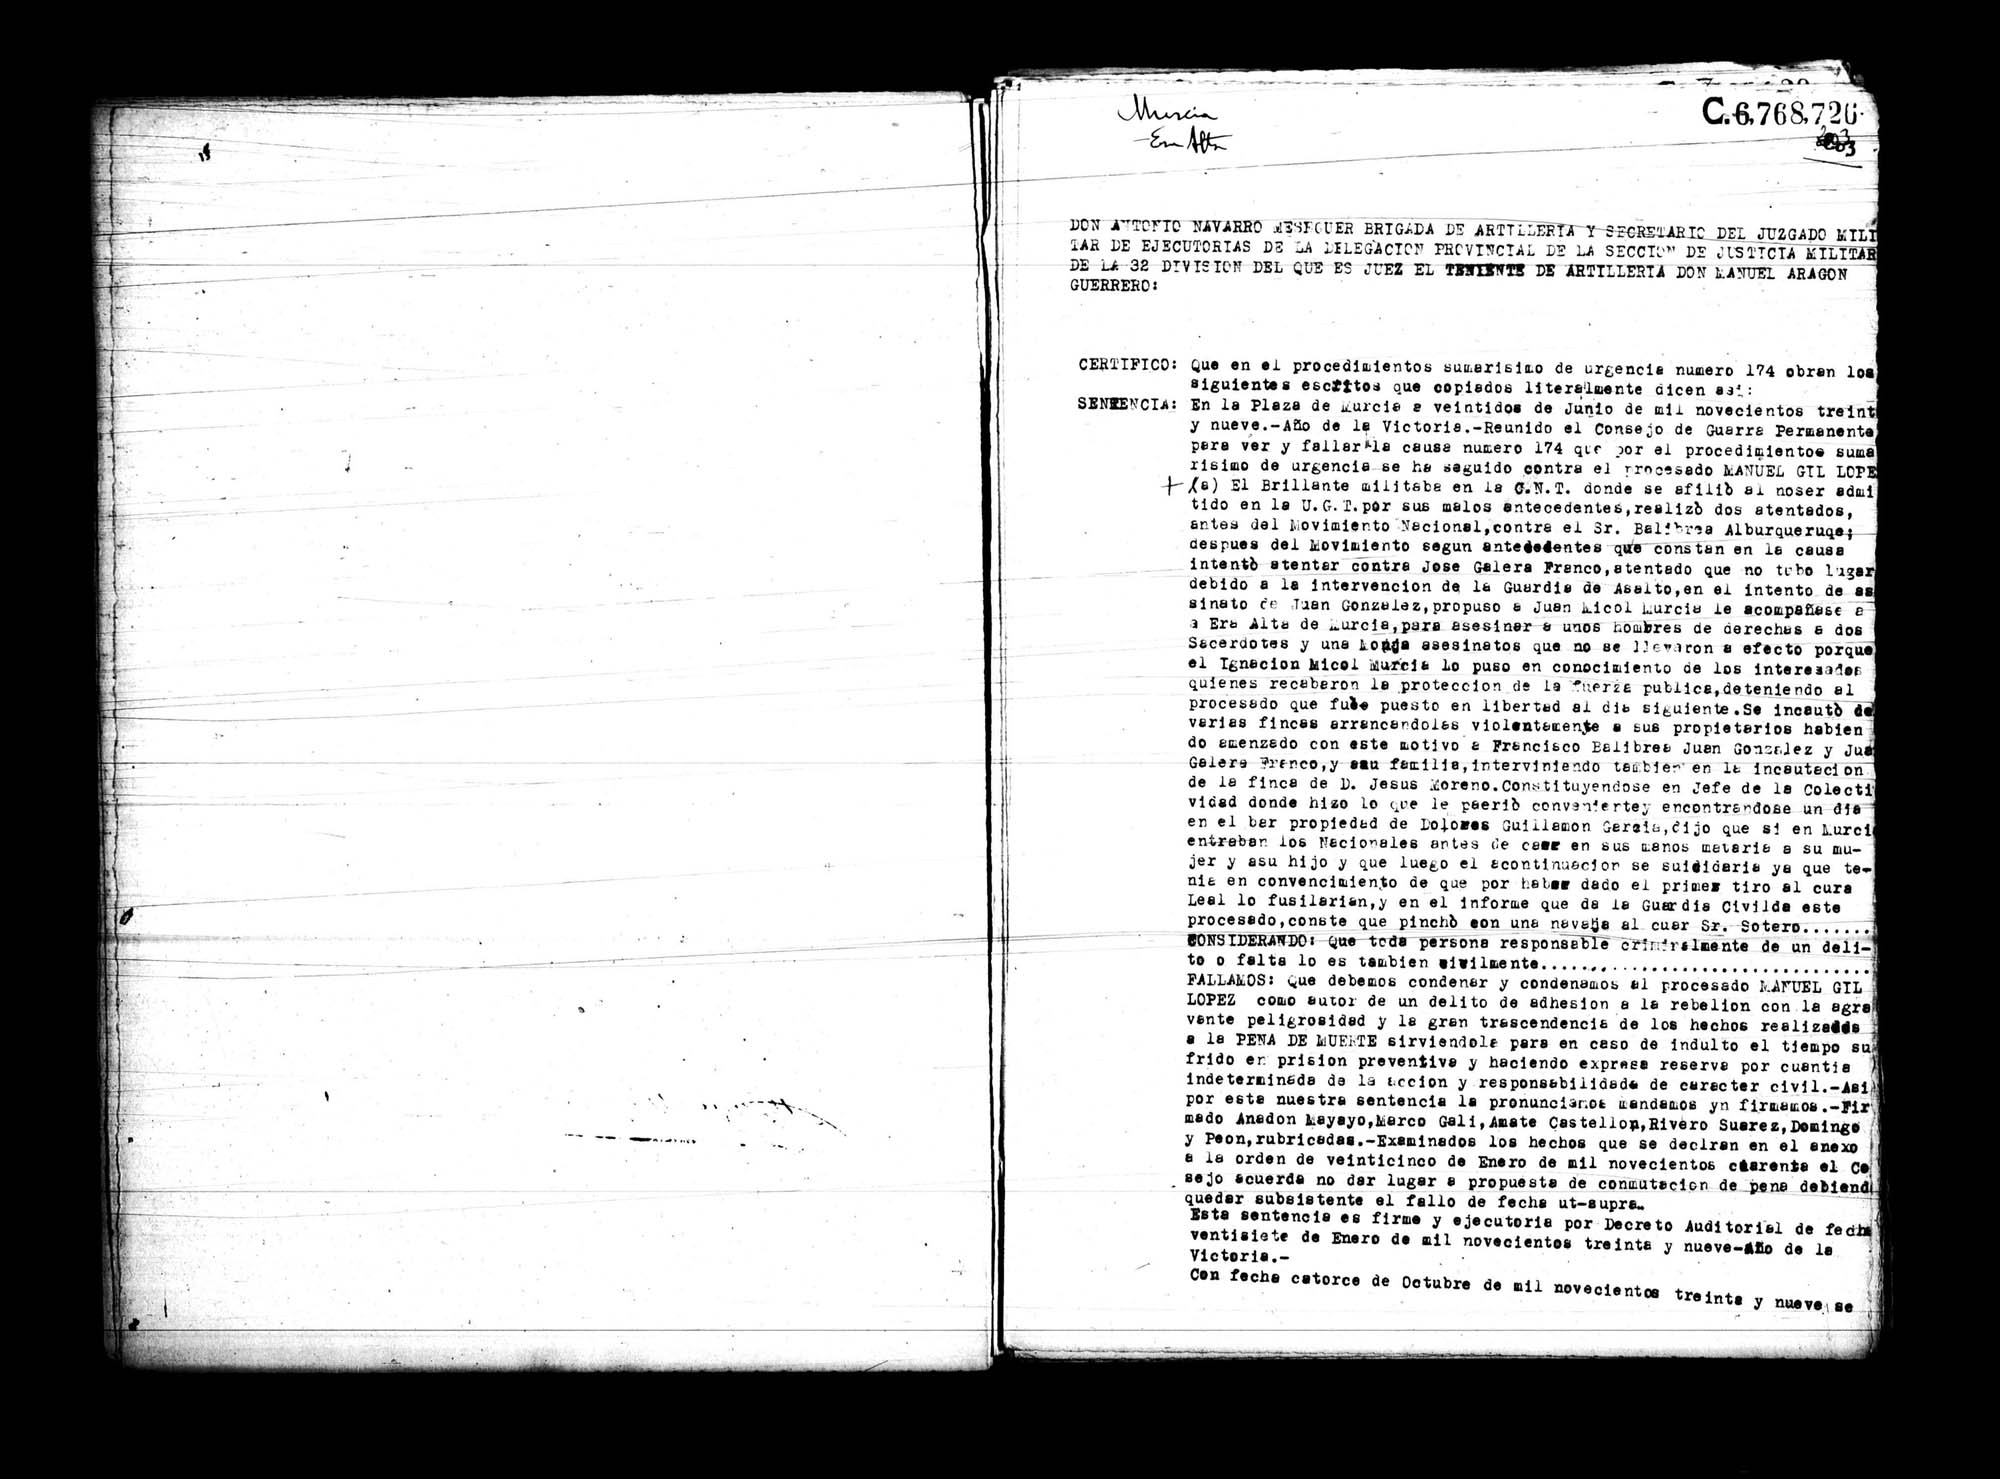 Certificado de la sentencia pronunciada contra Manuel Gil López, causa 174, el 22 de junio de 1939 en Murcia.